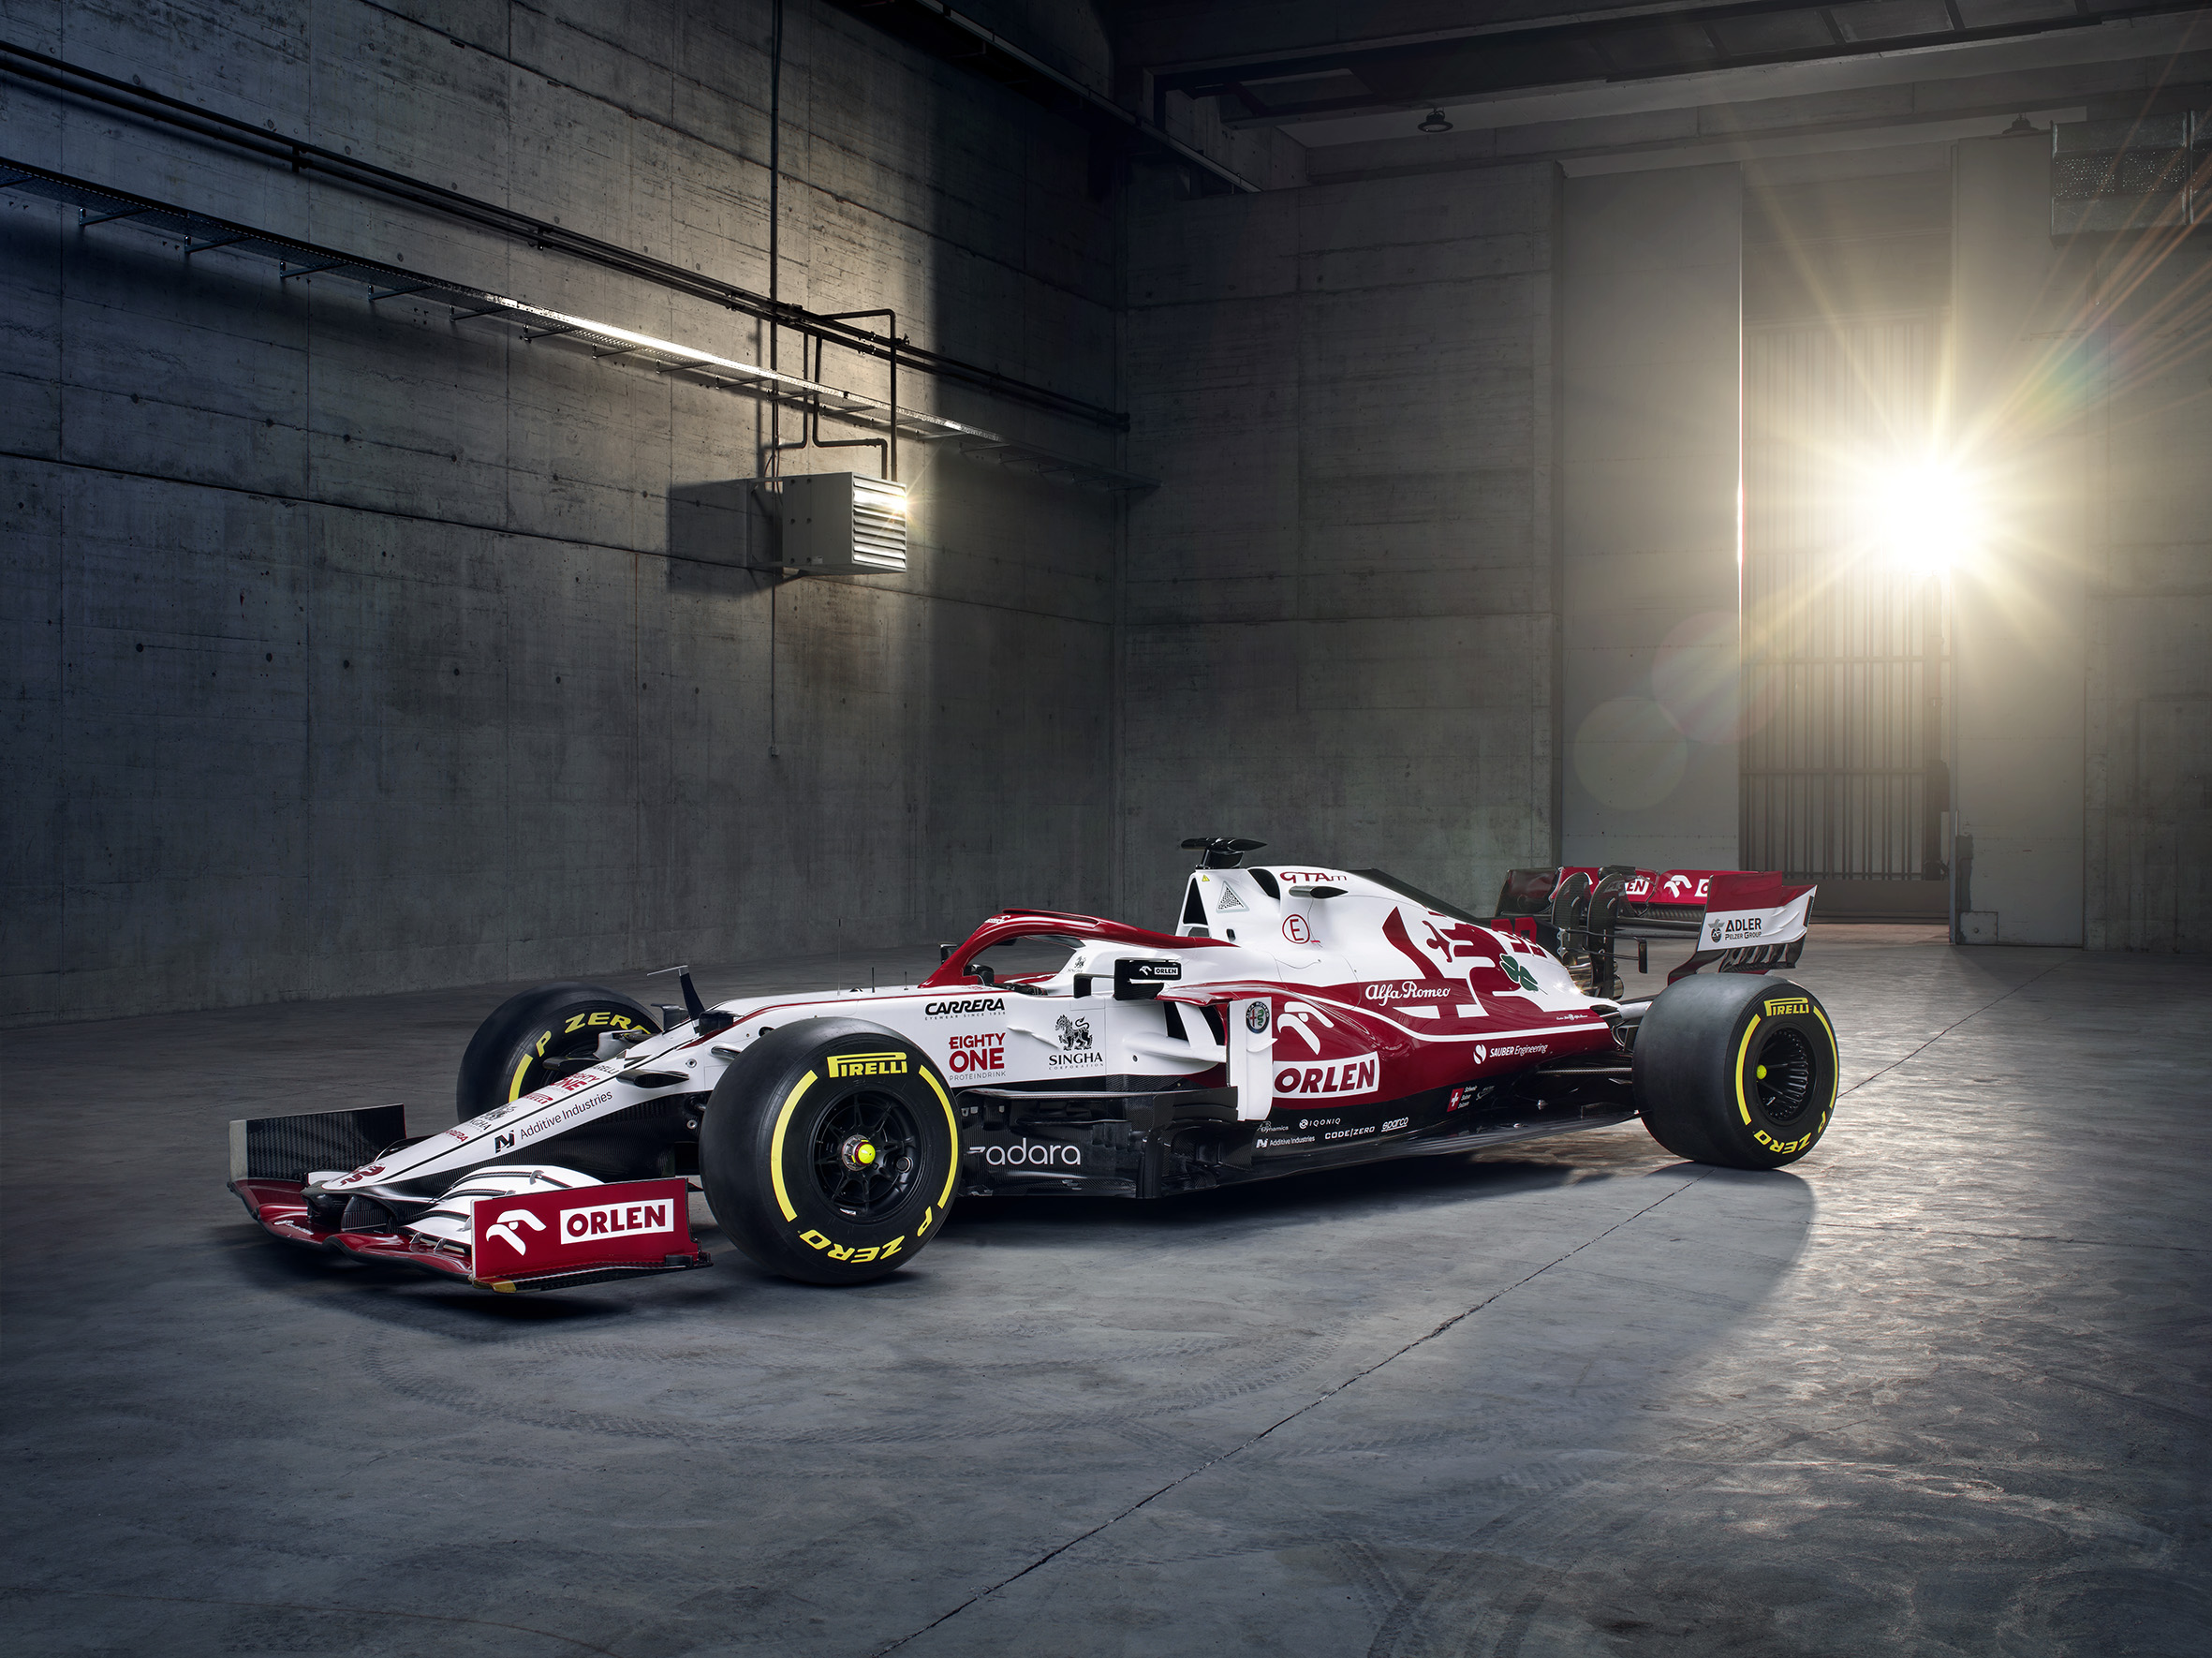 Tercera presentación de la temporada 2021 de Fórmula 1 Alfa Romeo